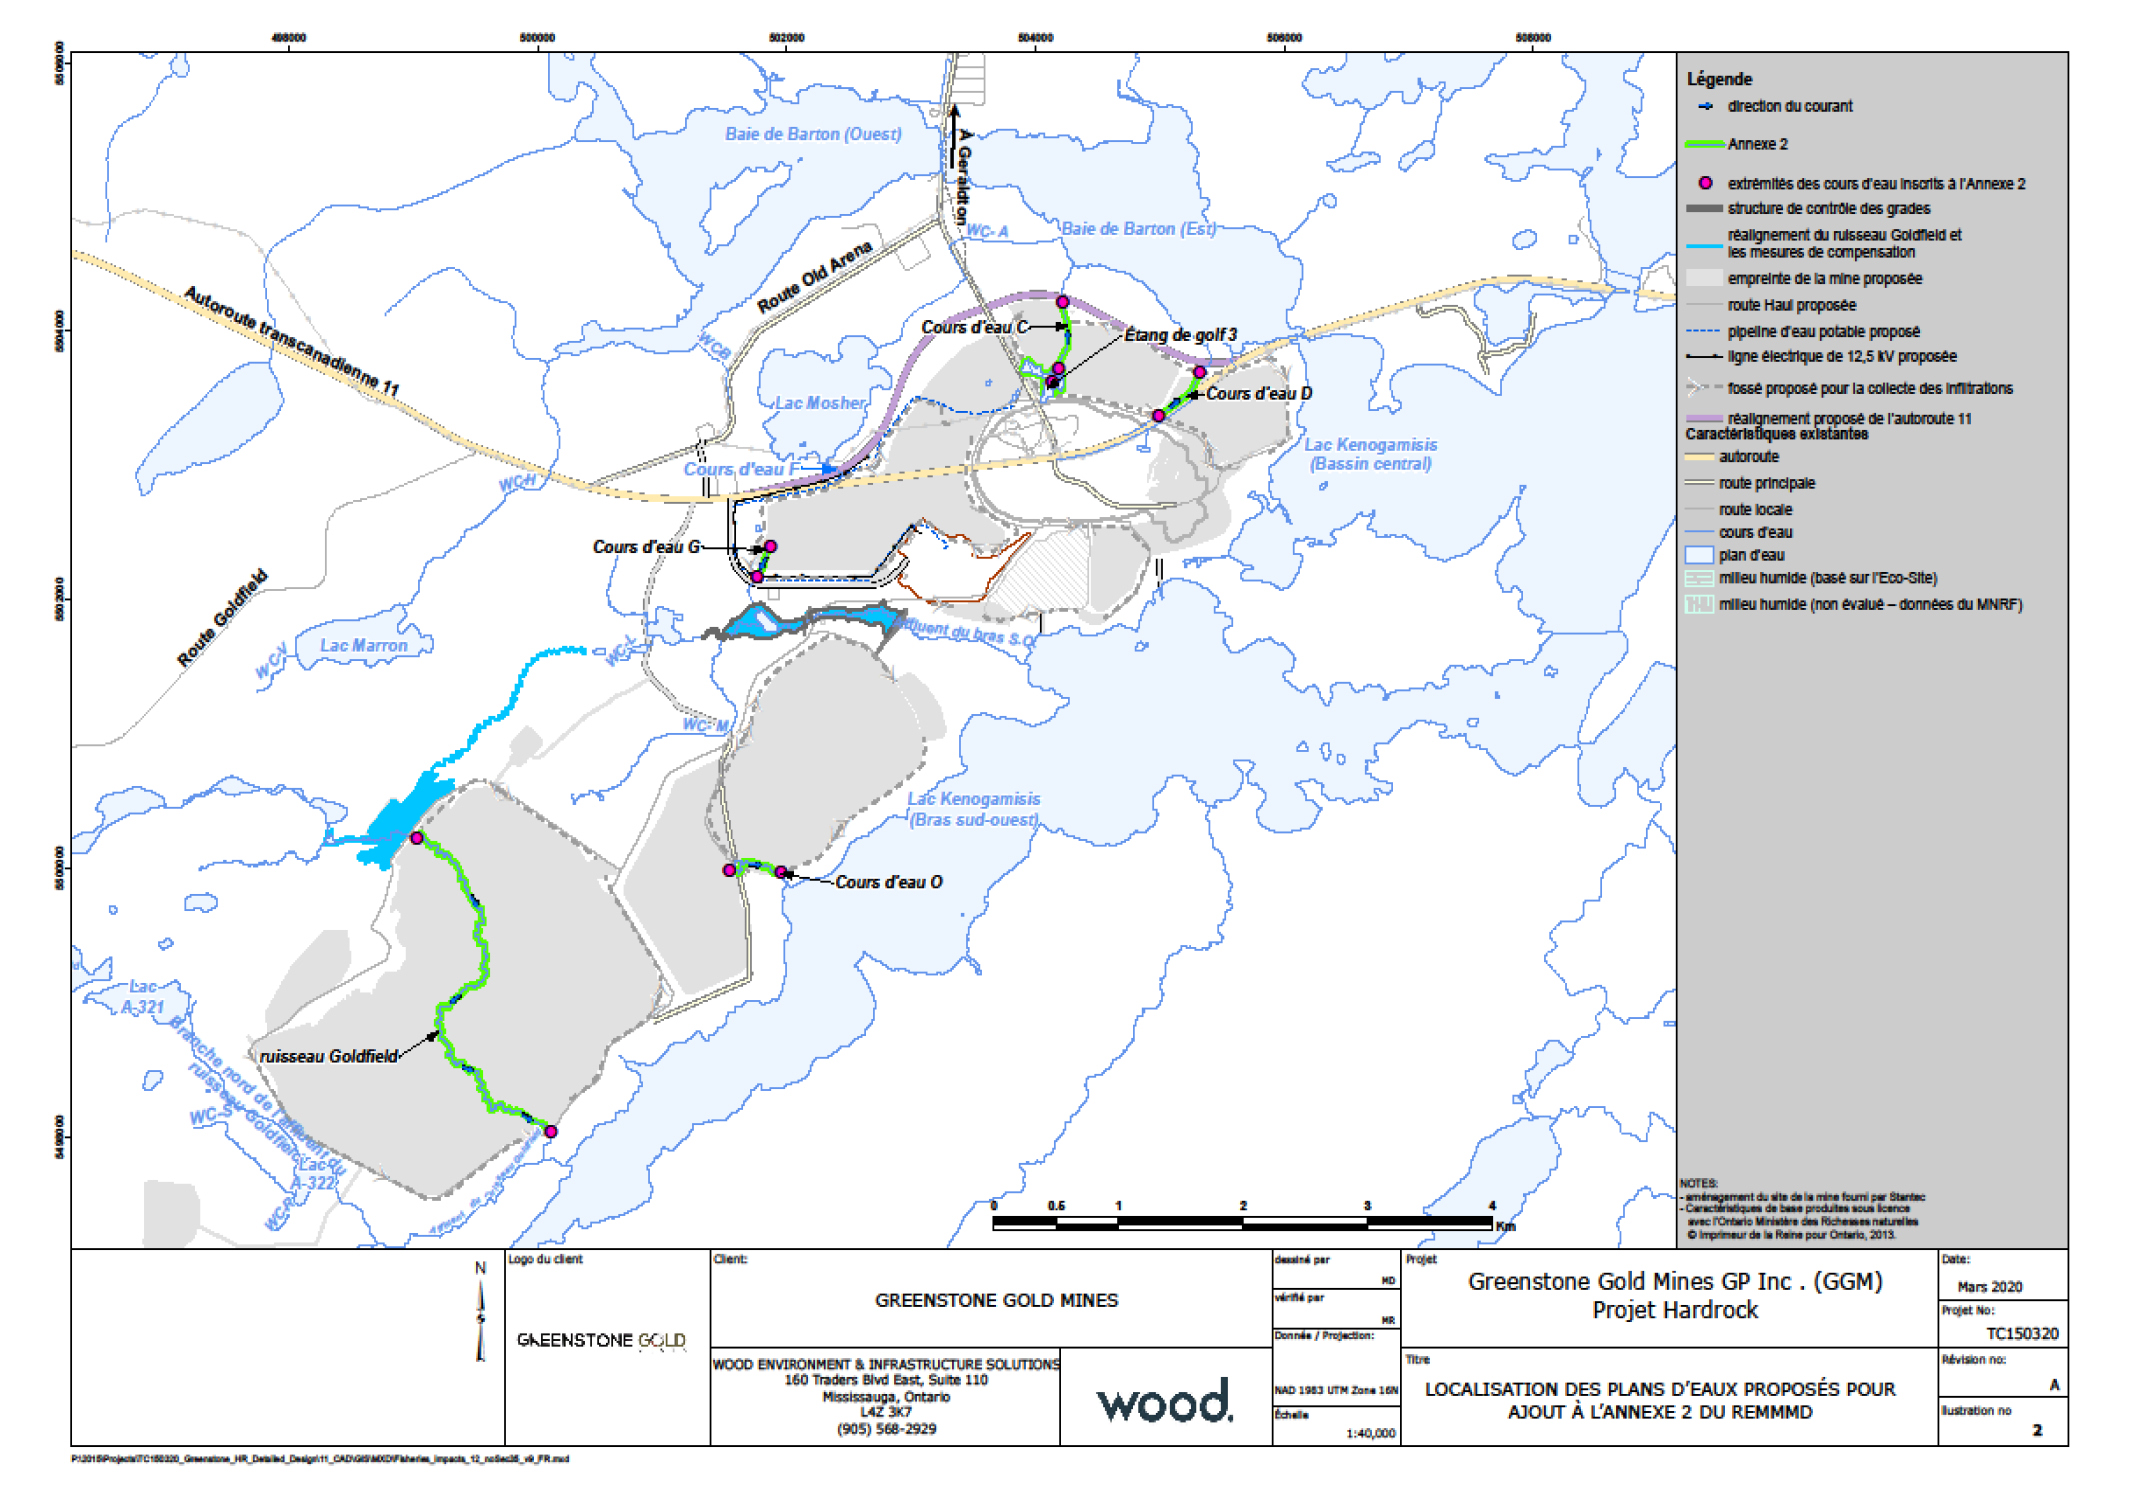 La figure 2 est une carte à l'échelle 1:40 000 montrant l'emplacement des six plans d'eau à inscrire à l'annexe 2 du REMMMD. – Description ci-dessous